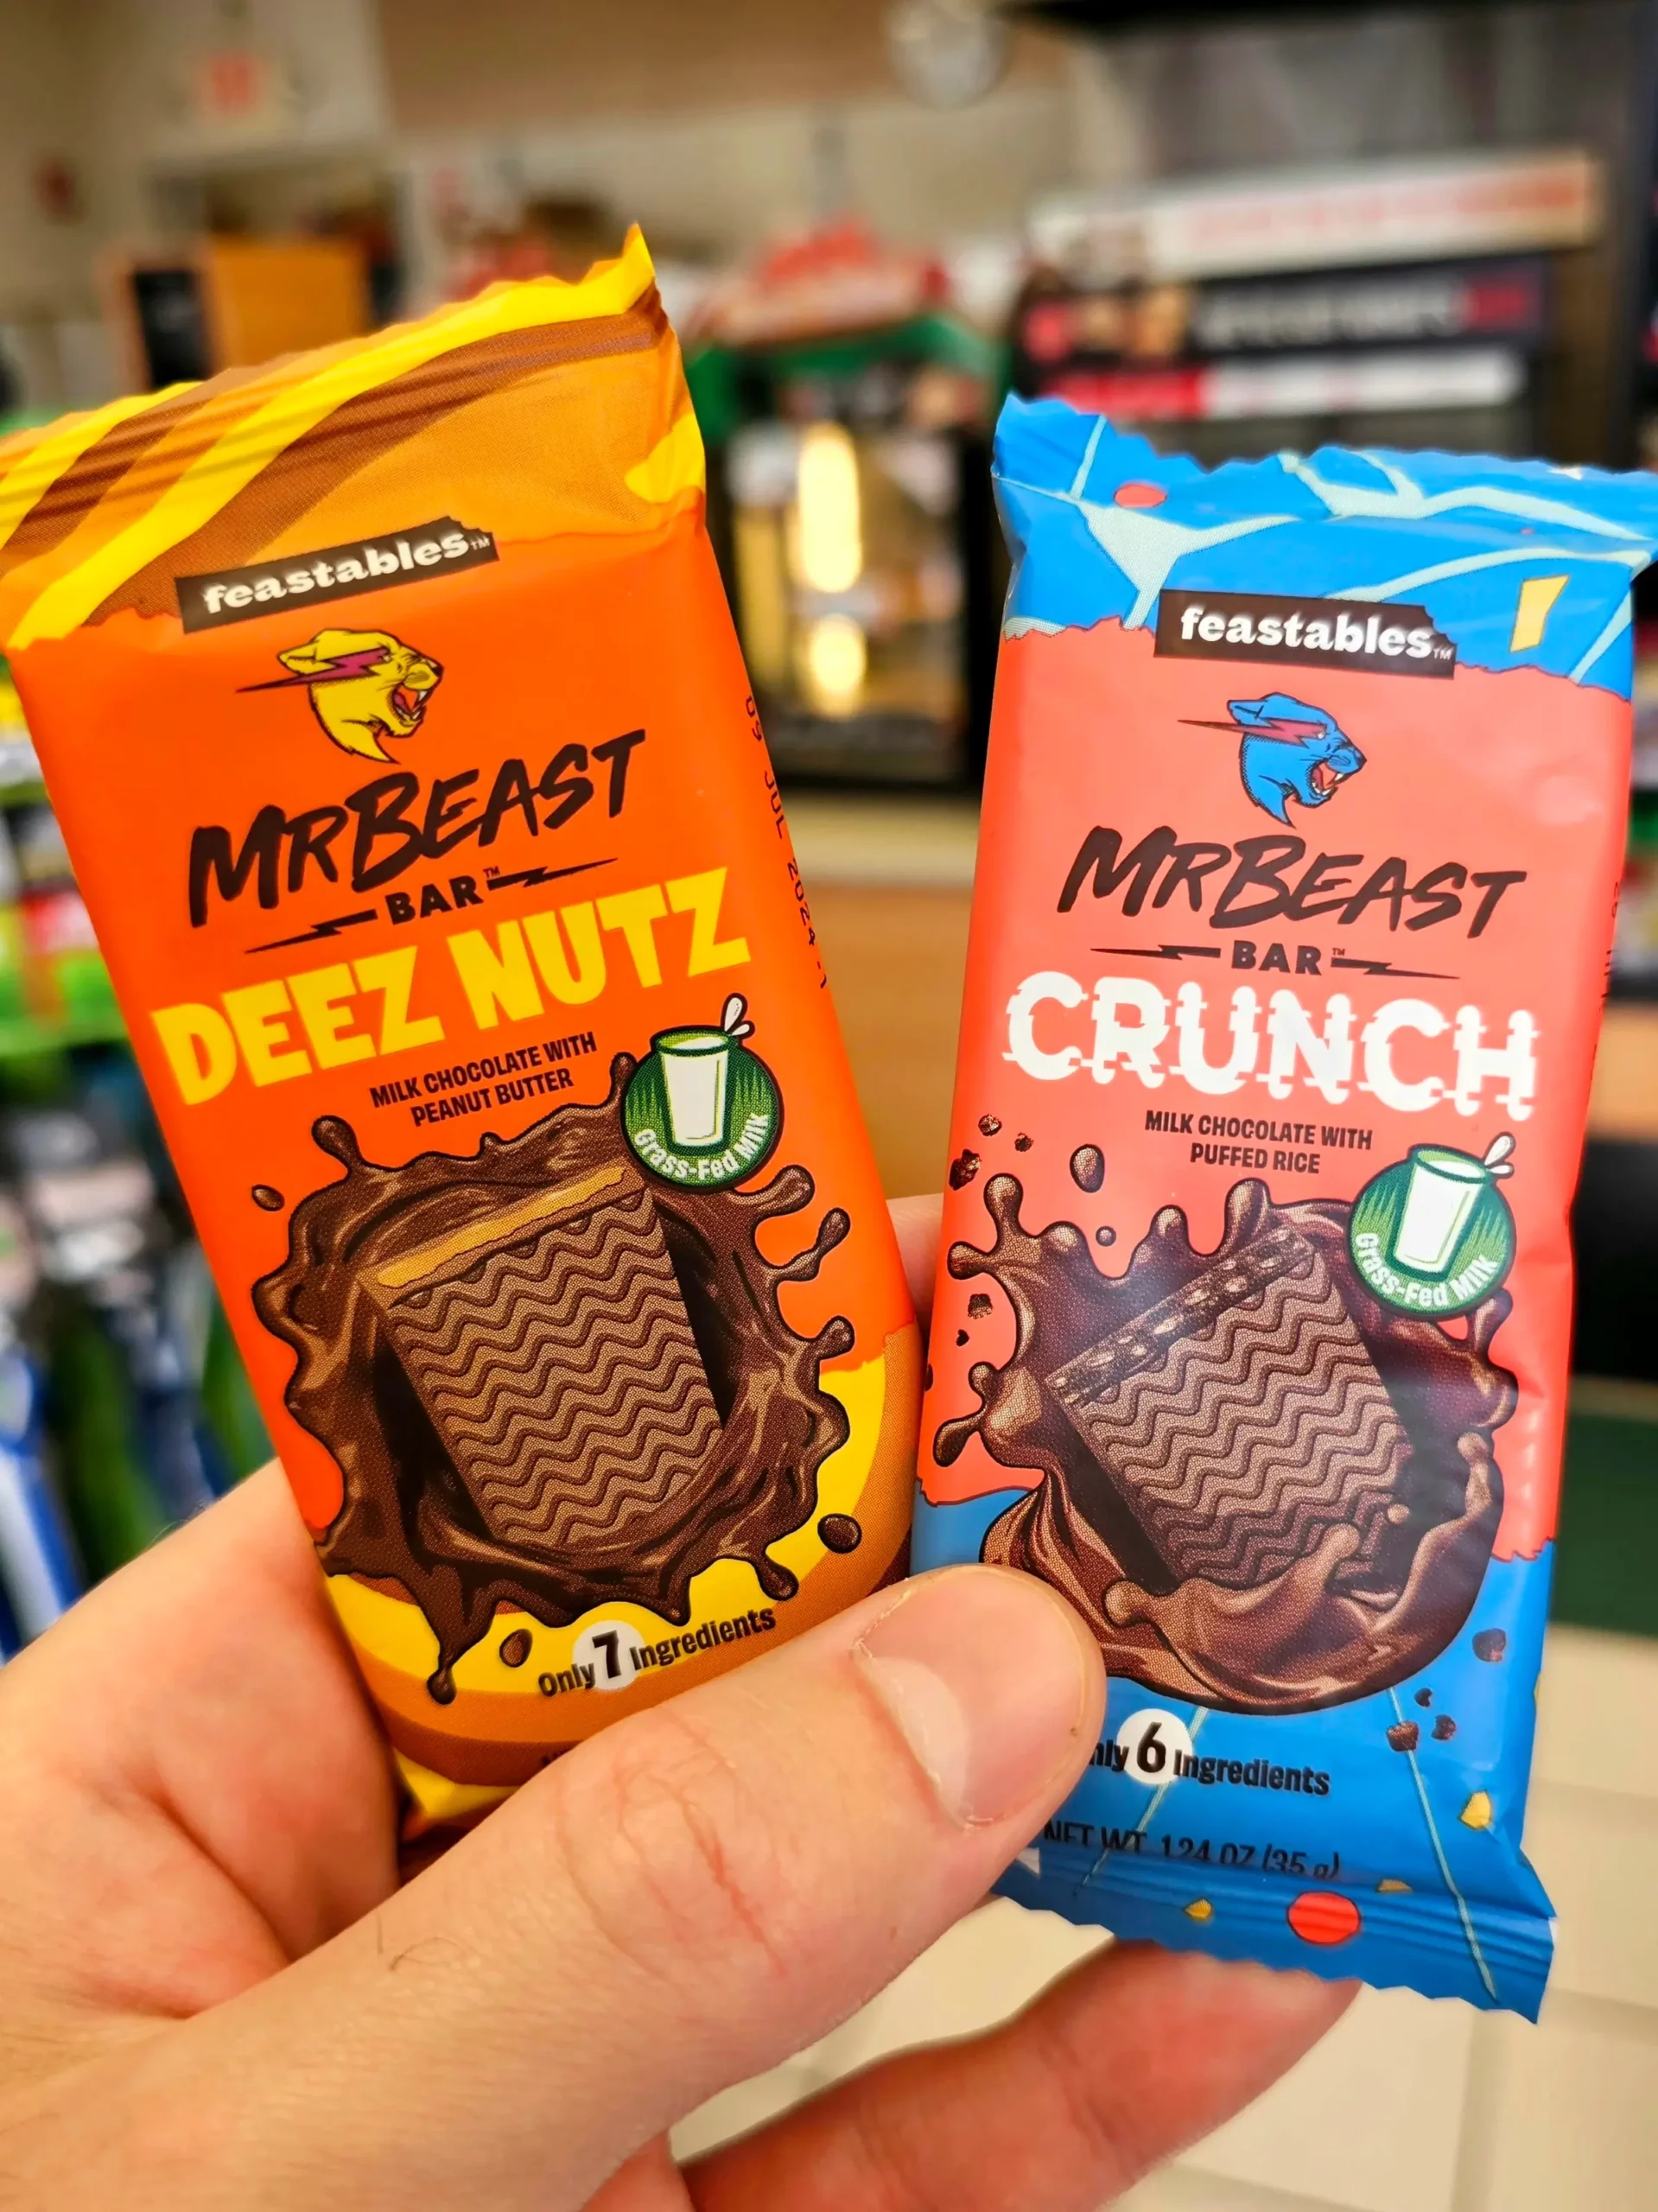 Mrbeast Chocolate Bar Deez Nuts - Mrbeast Chocolate Bar